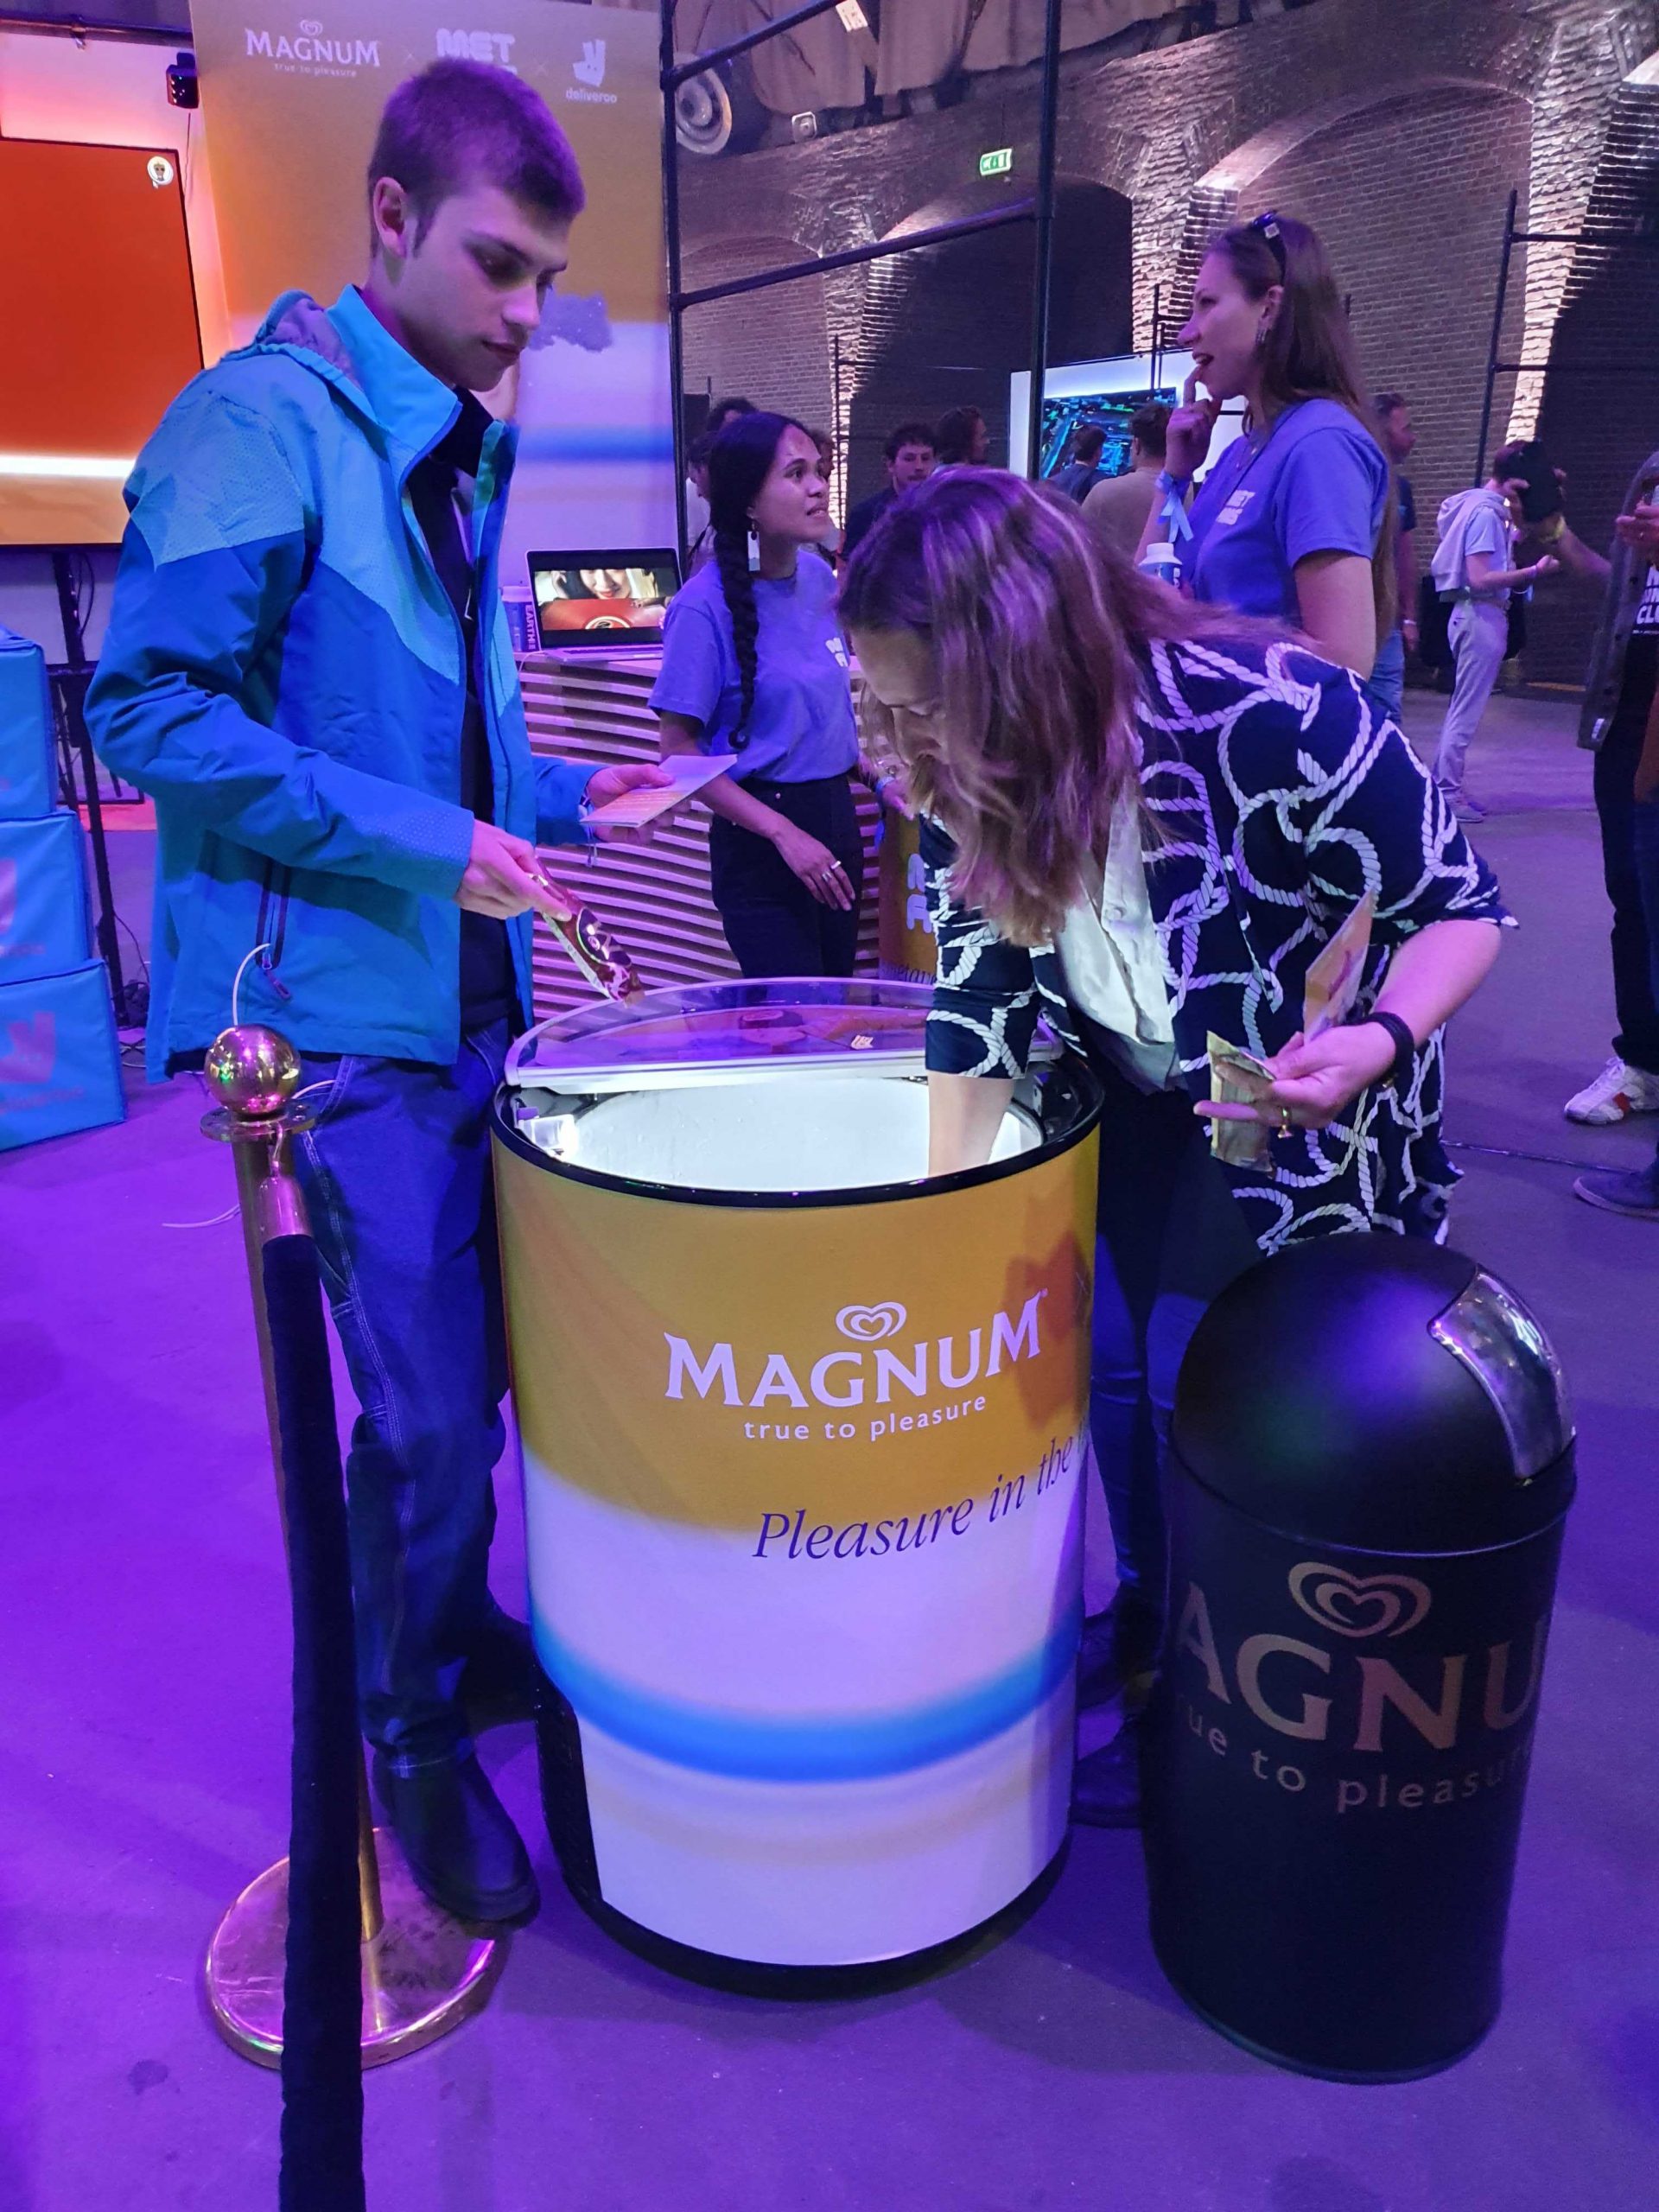 magnum ice cream booth at Amsterdam metaverse festival